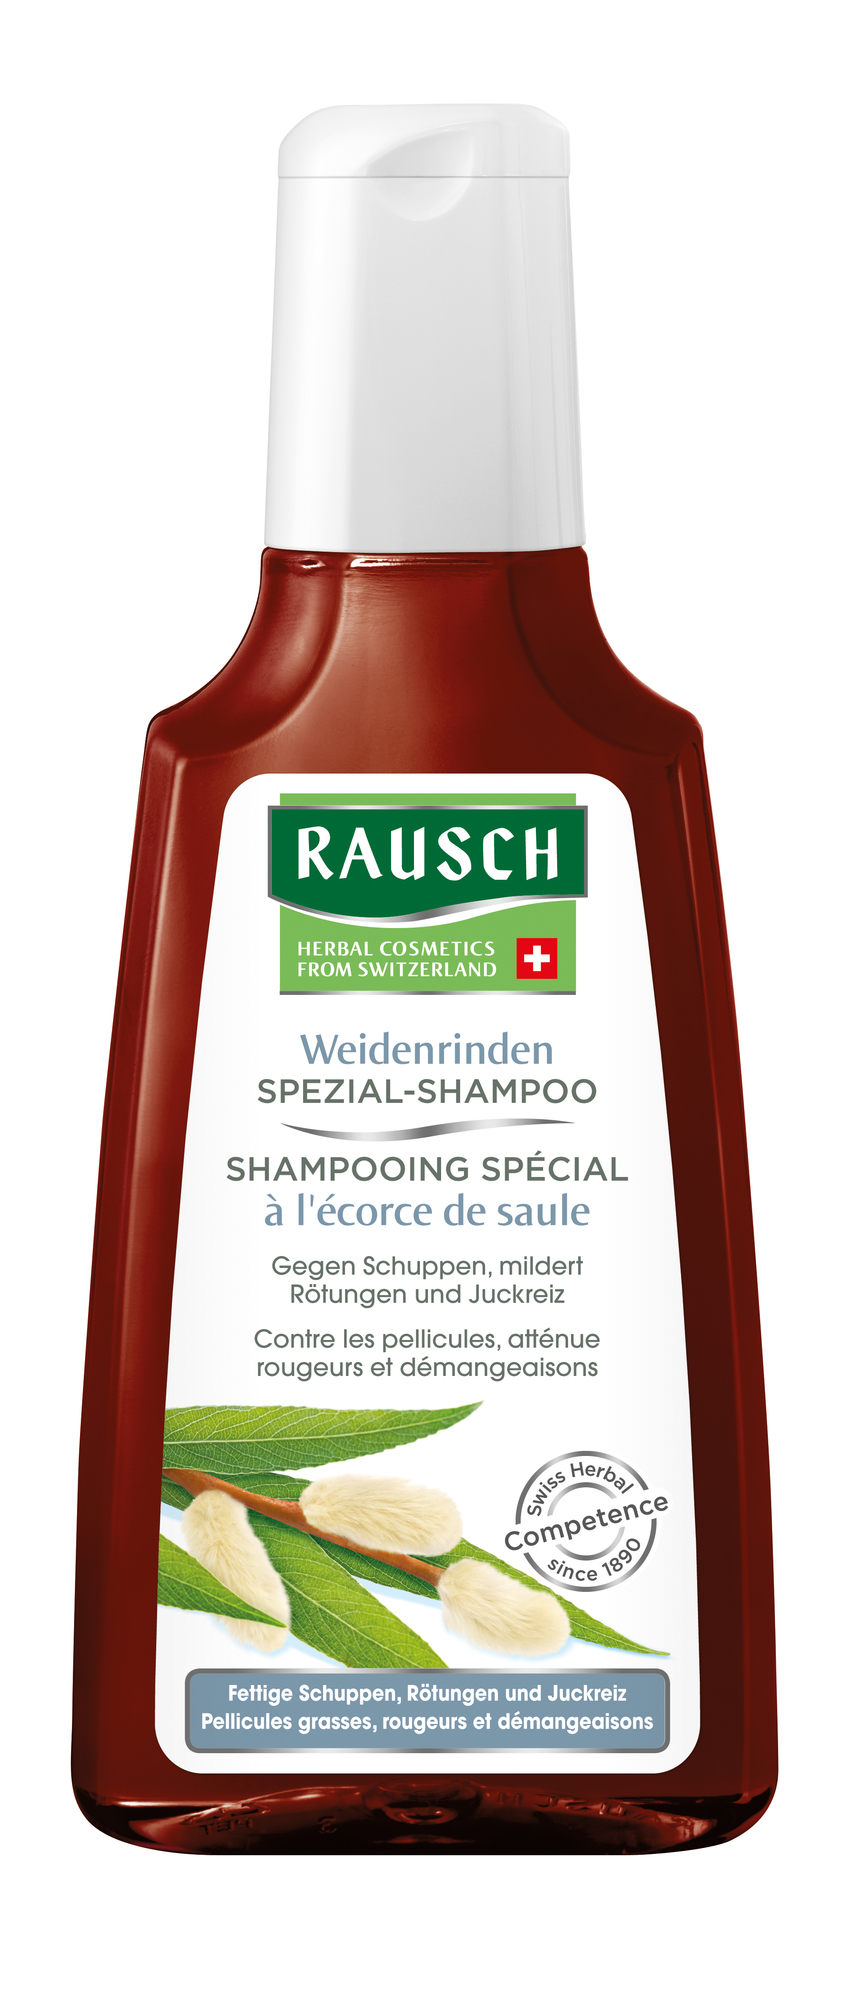 RAUSCH Weidenrinden Spezial-Shampoo 200 ml